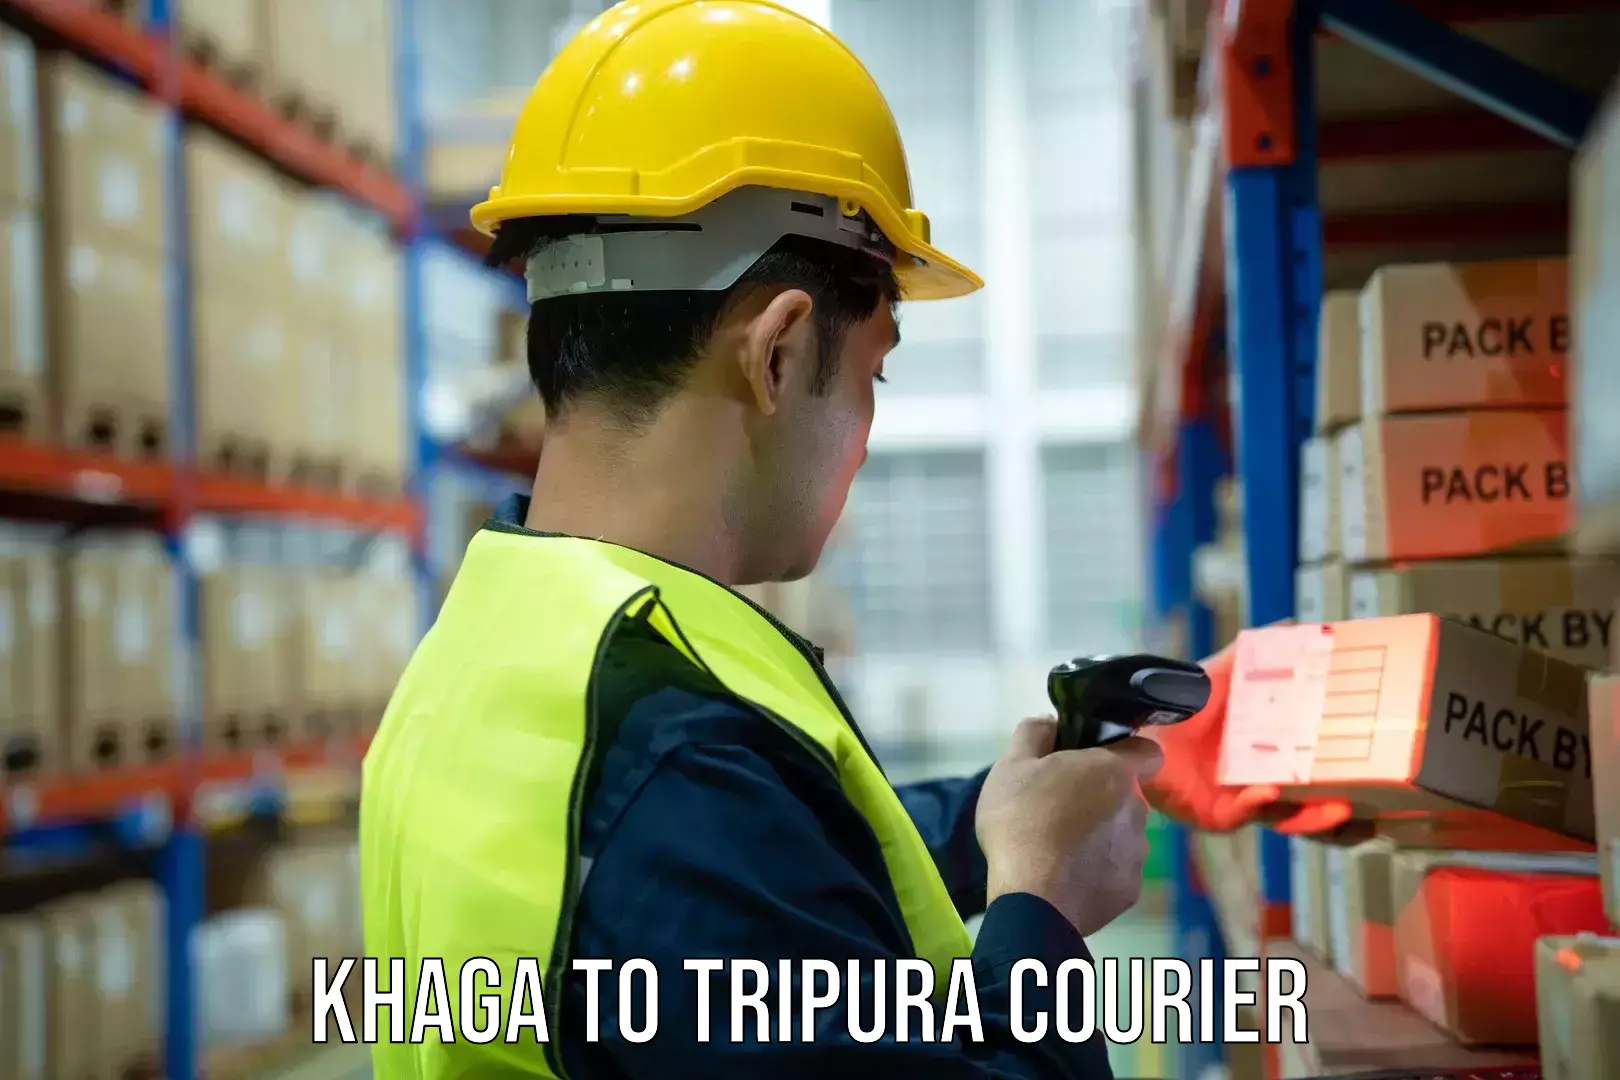 Advanced courier platforms Khaga to Tripura